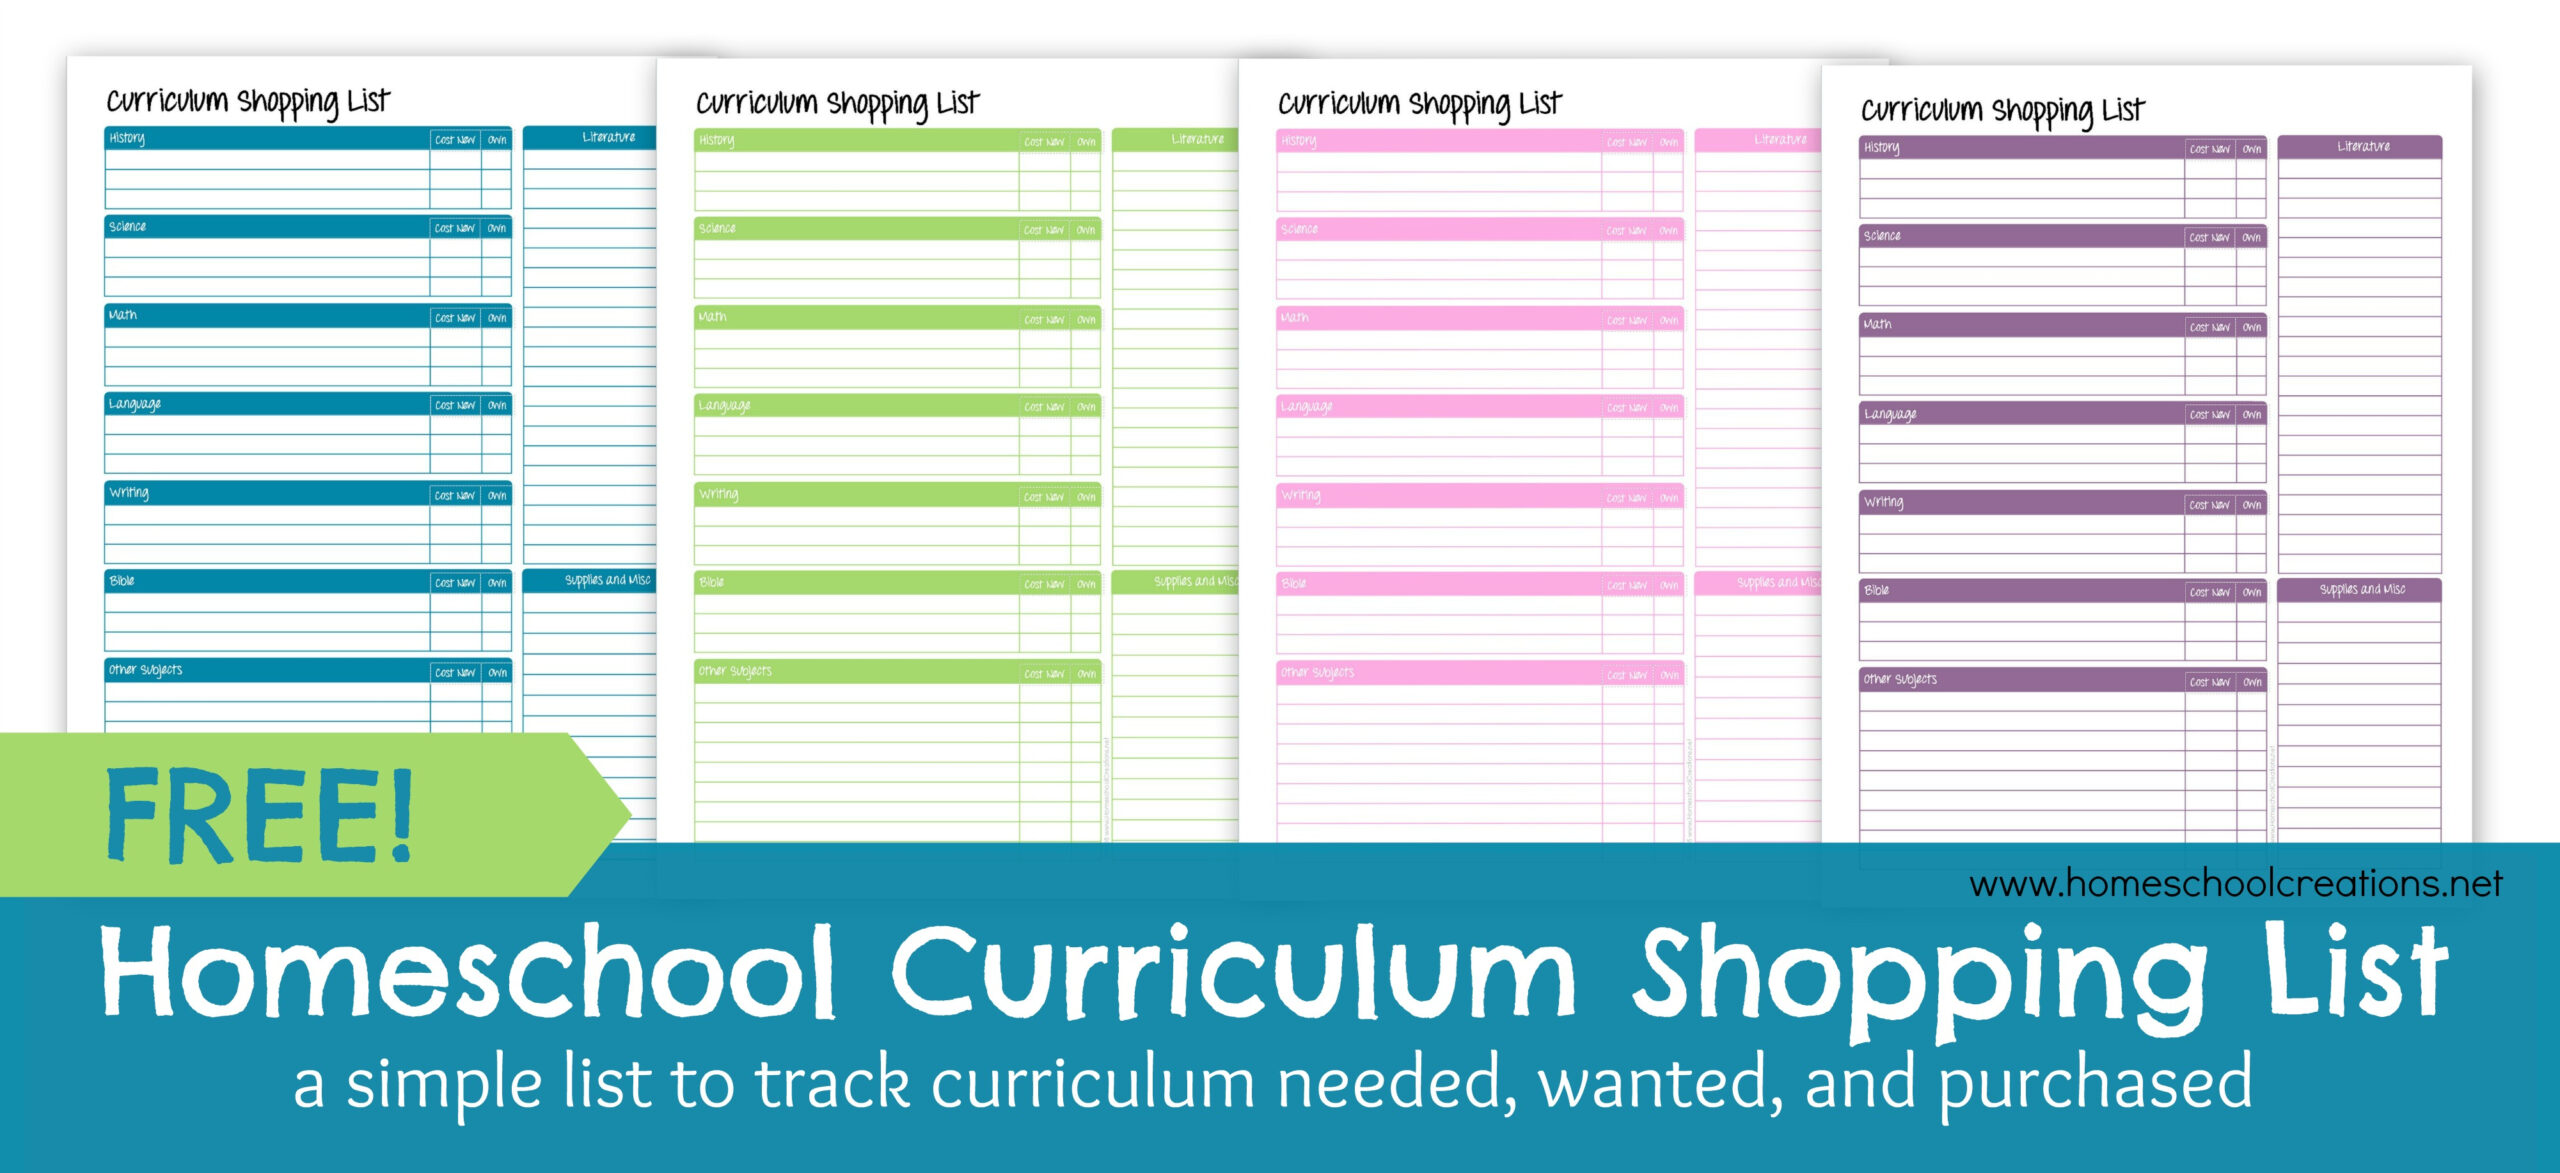 Homeschool Curriculum Shopping List: Free Printable intended for Free Printable Homeschool Curriculum